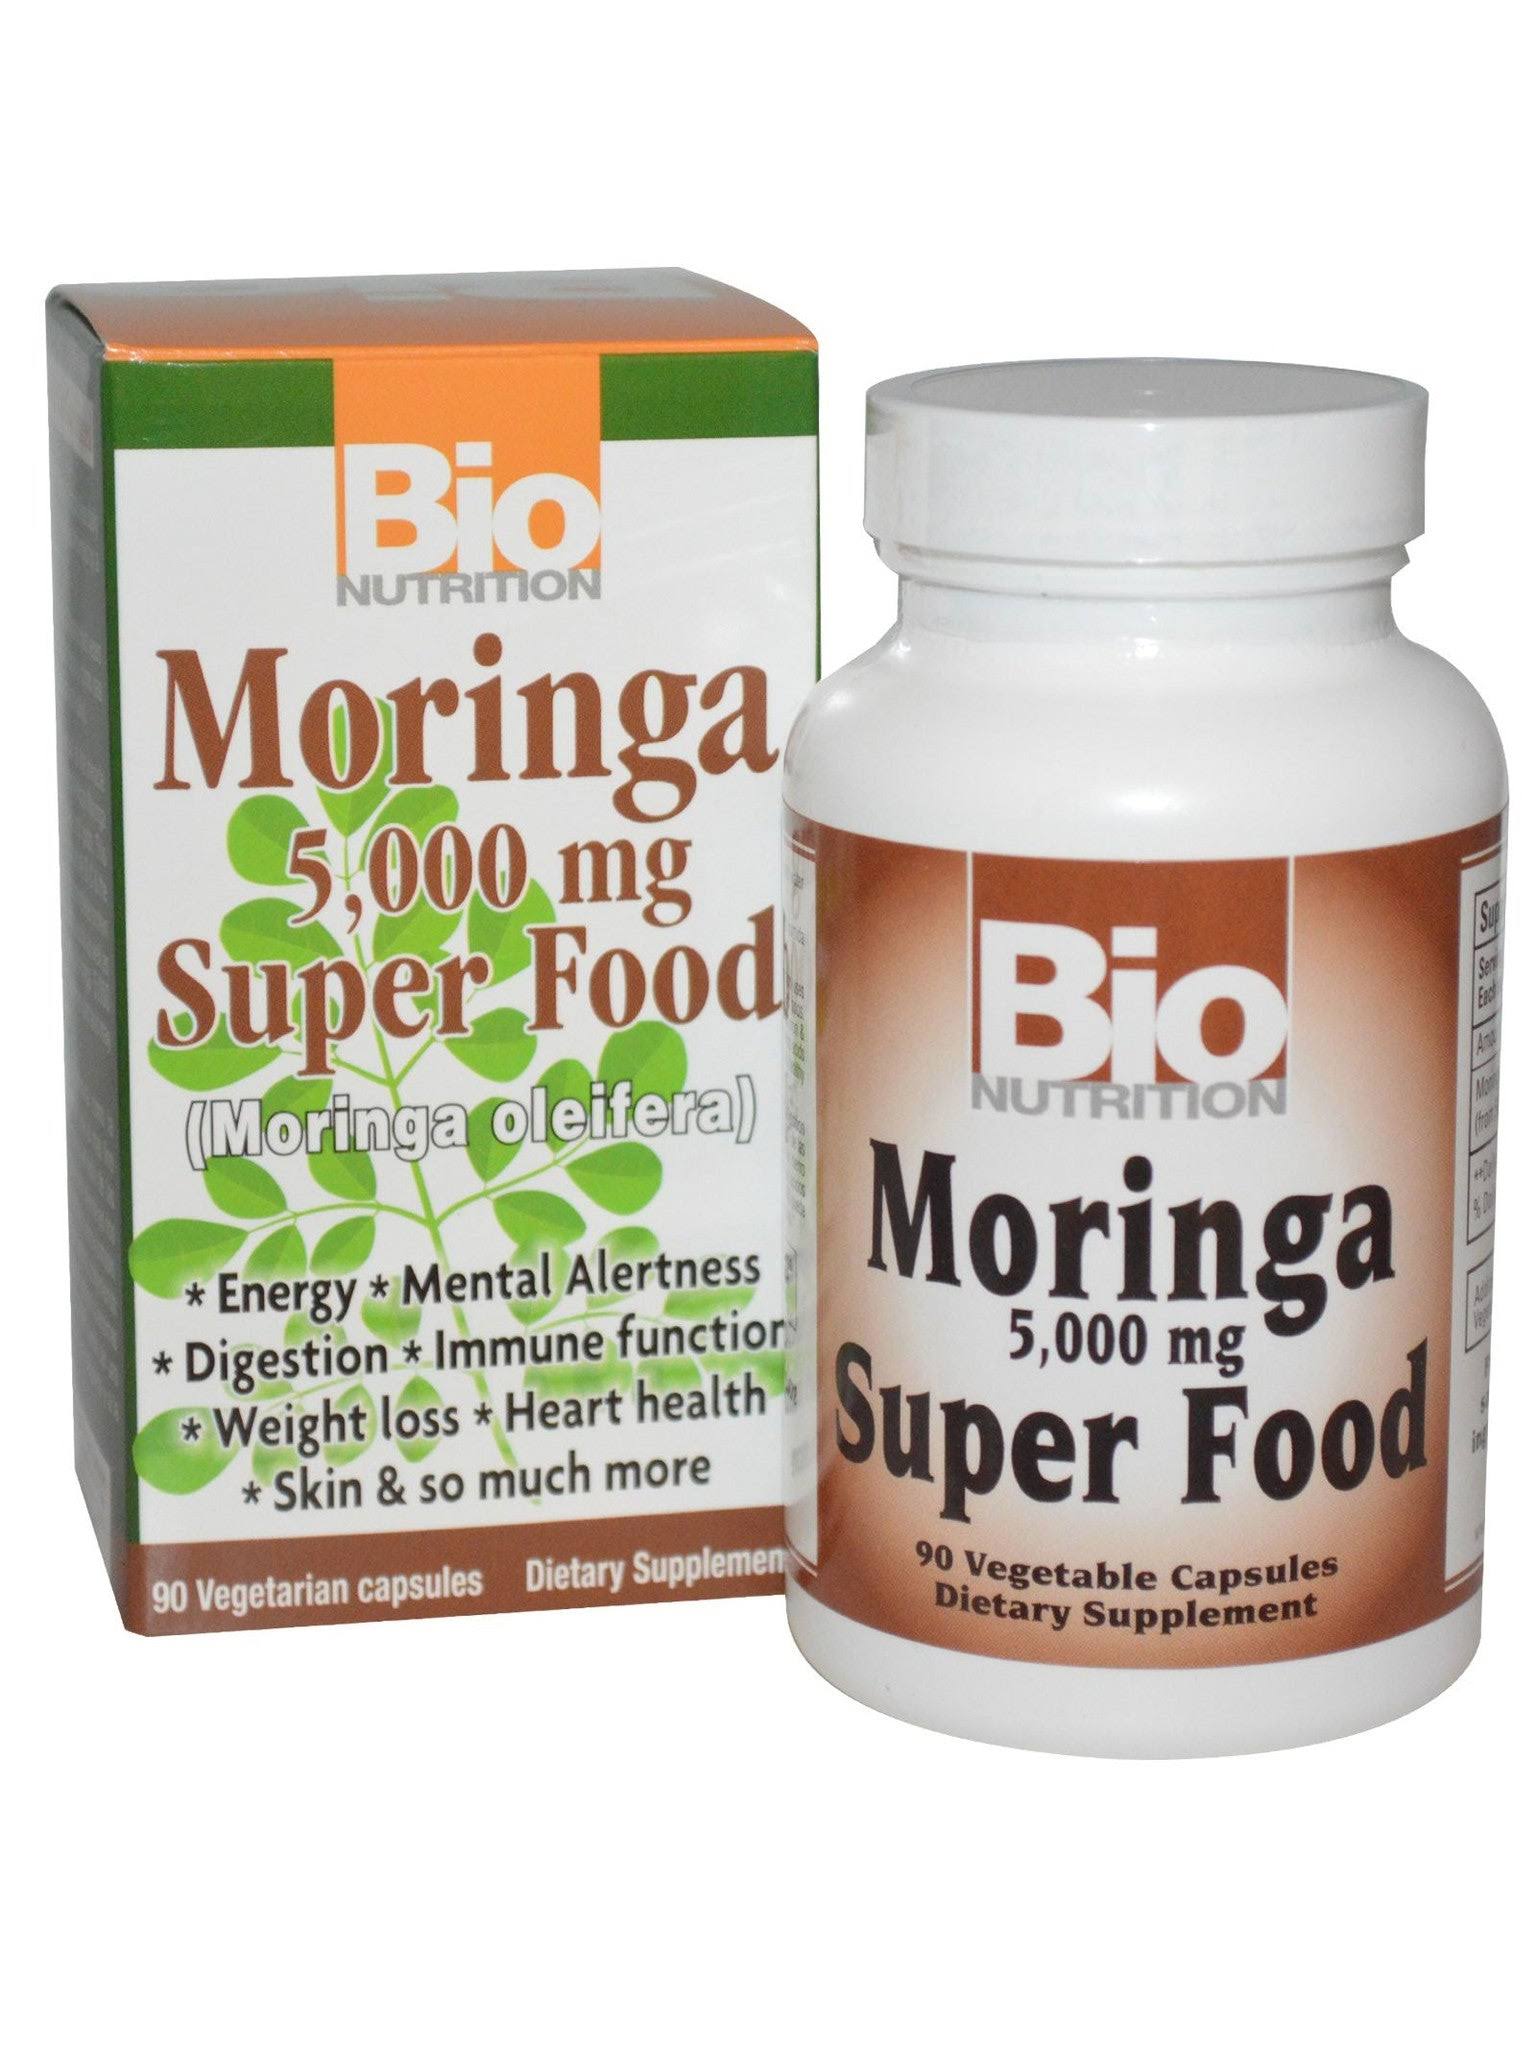 Bio Nutrition Moringa Super Food Supplement - 5000mg, 90 Vegetarian Capsules